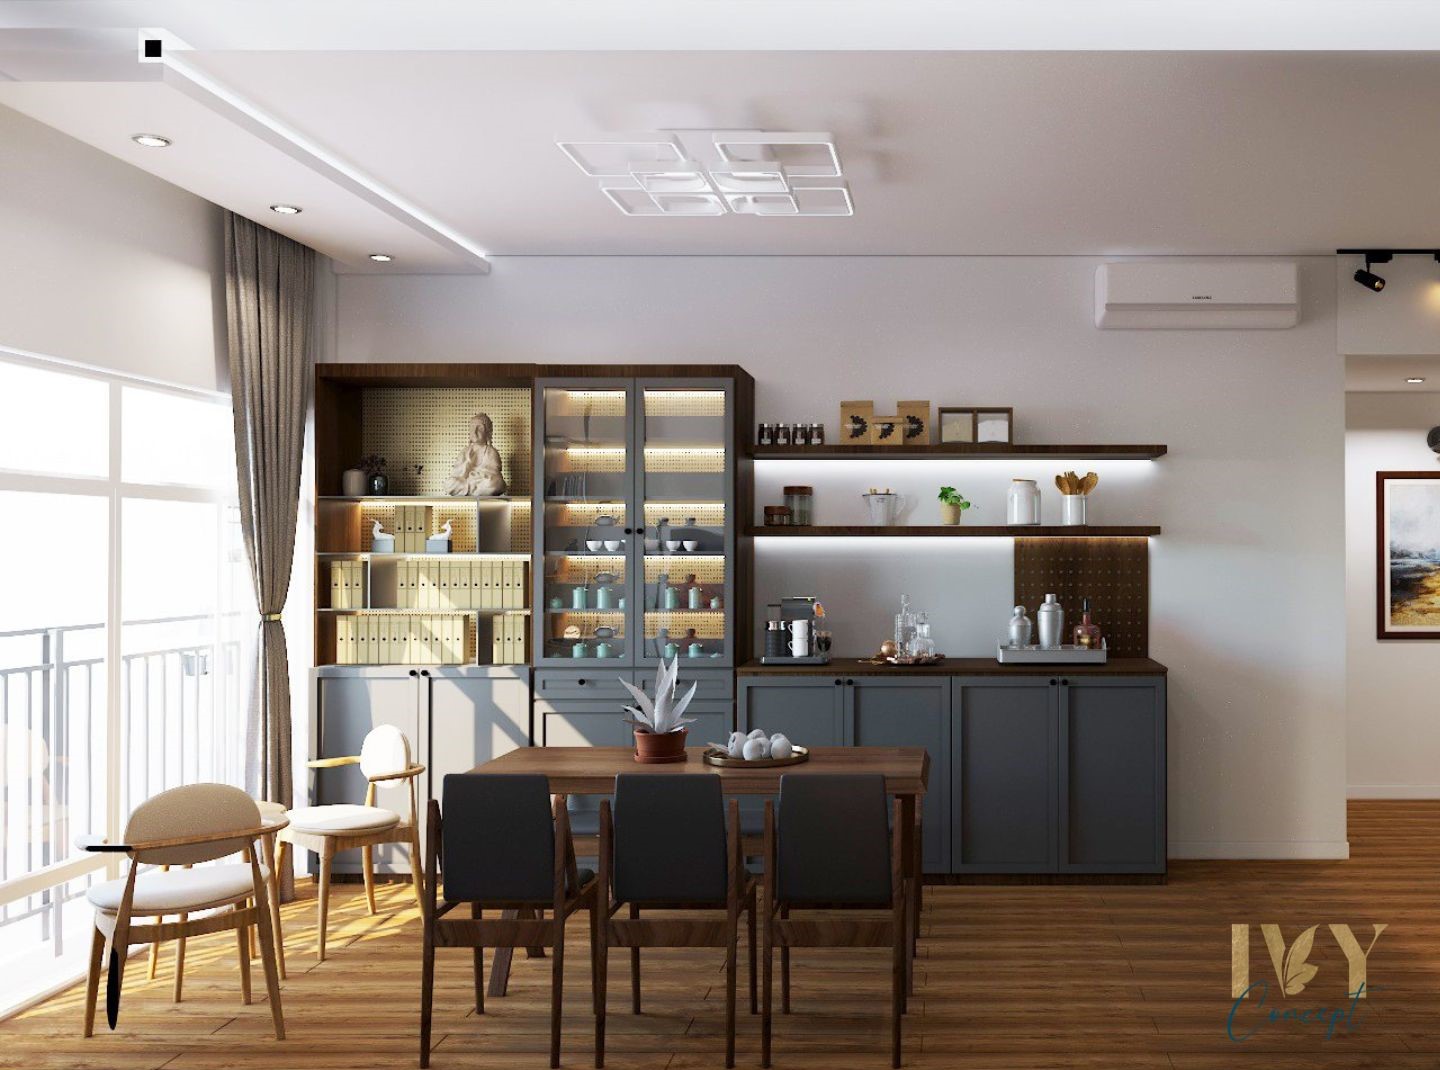 Phòng ăn, phong cách Công nghiệp Industrial, thiết kế concept nội thất, căn hộ Tản Đà Court